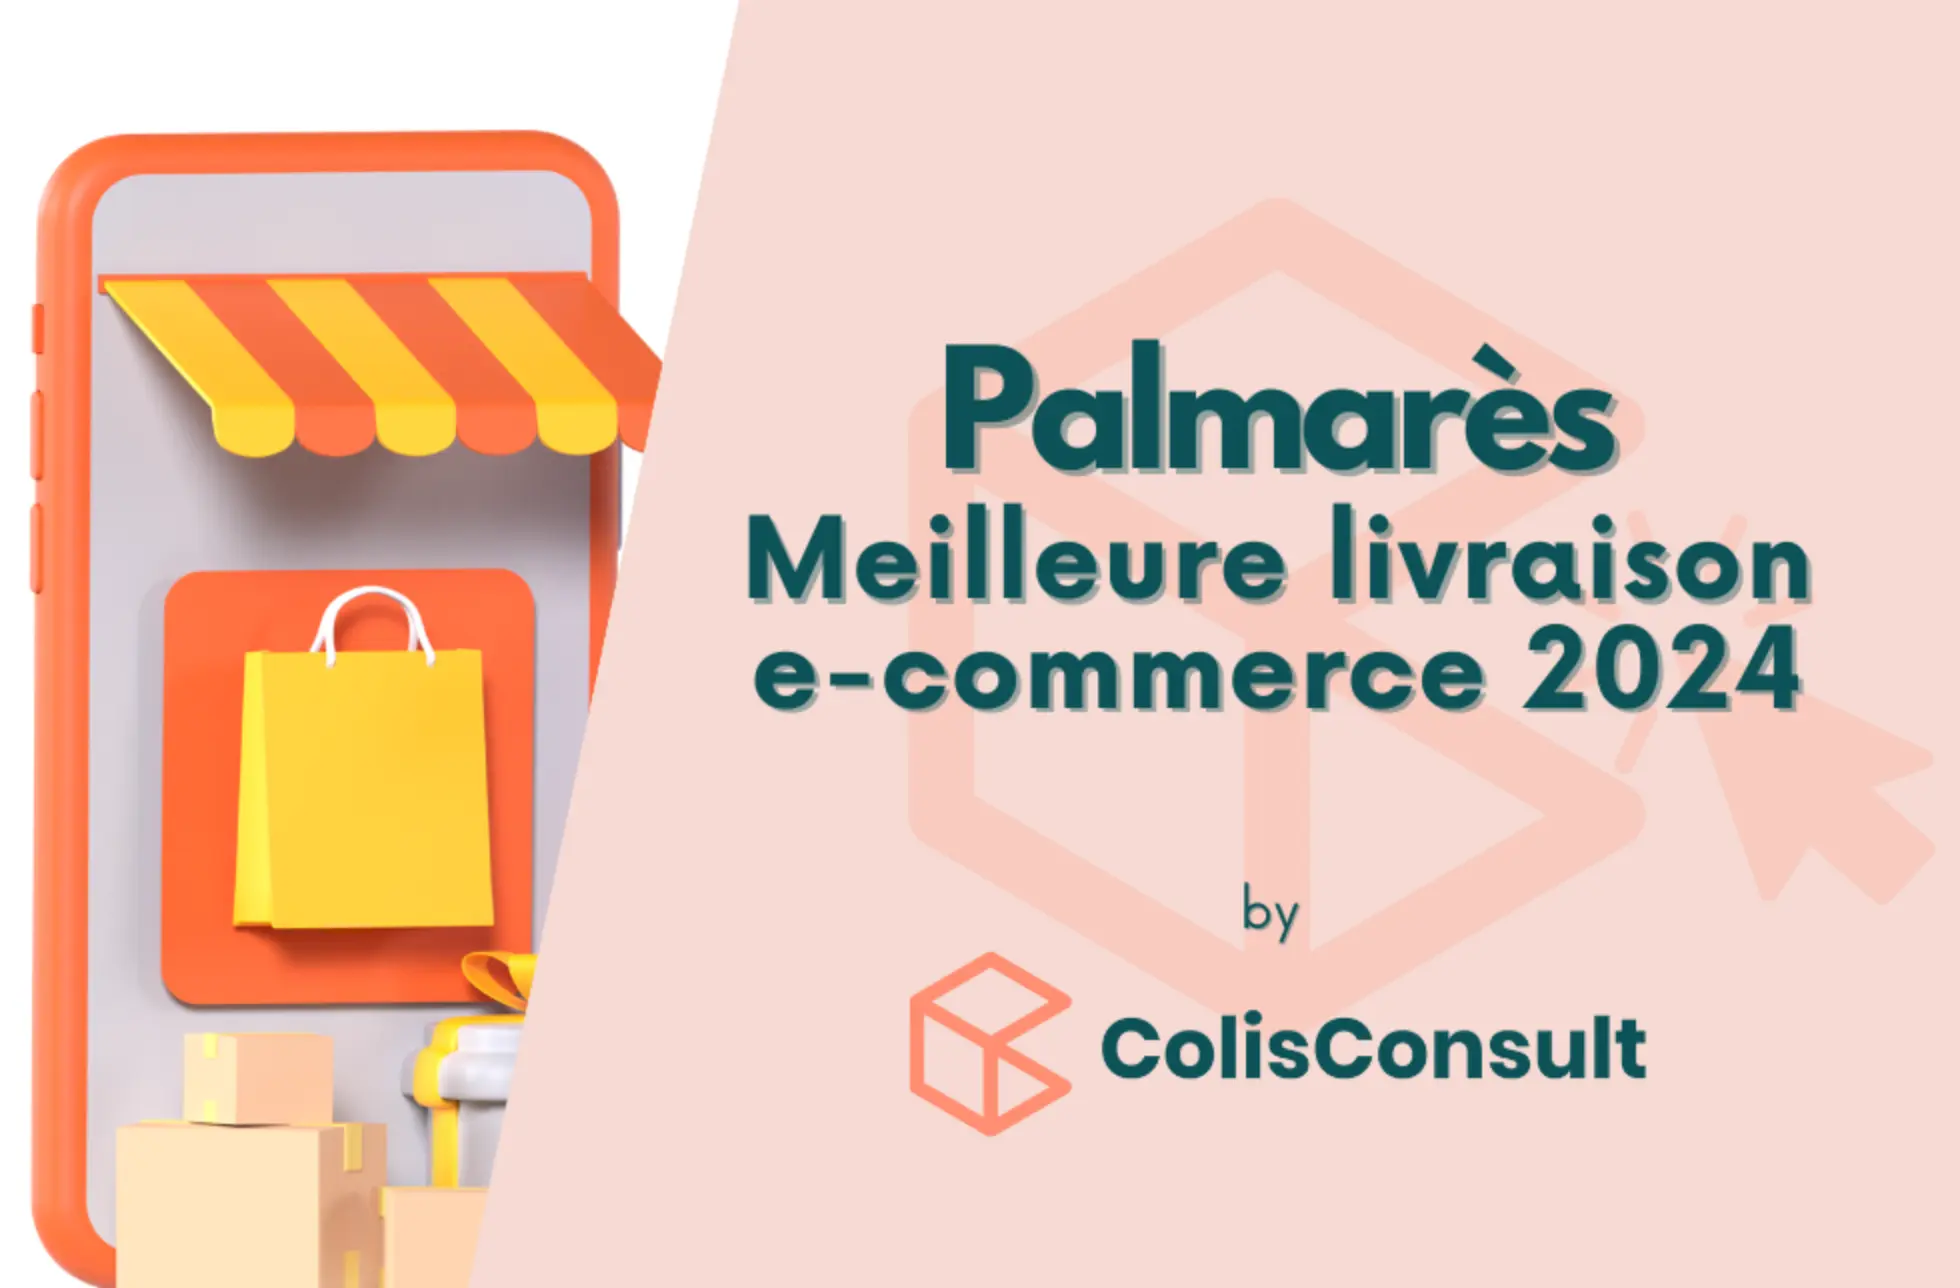 Le Palmarès Meilleure livraison e-commerce 2024 : tarifs, services, transporteurs, vous saurez tout sur la livraison de plus de 500 sites e-commerces